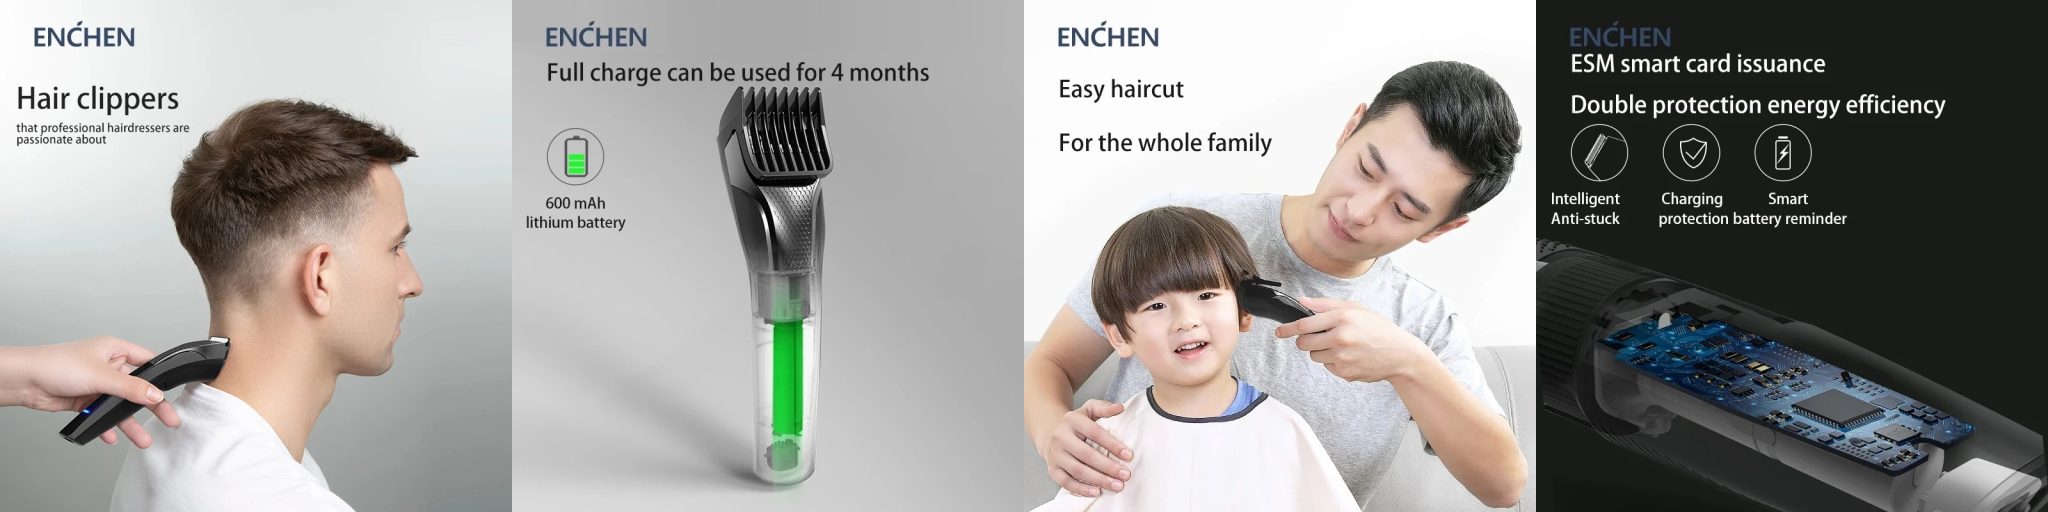 Enchen Sharp3 hajvágógép teszt 14